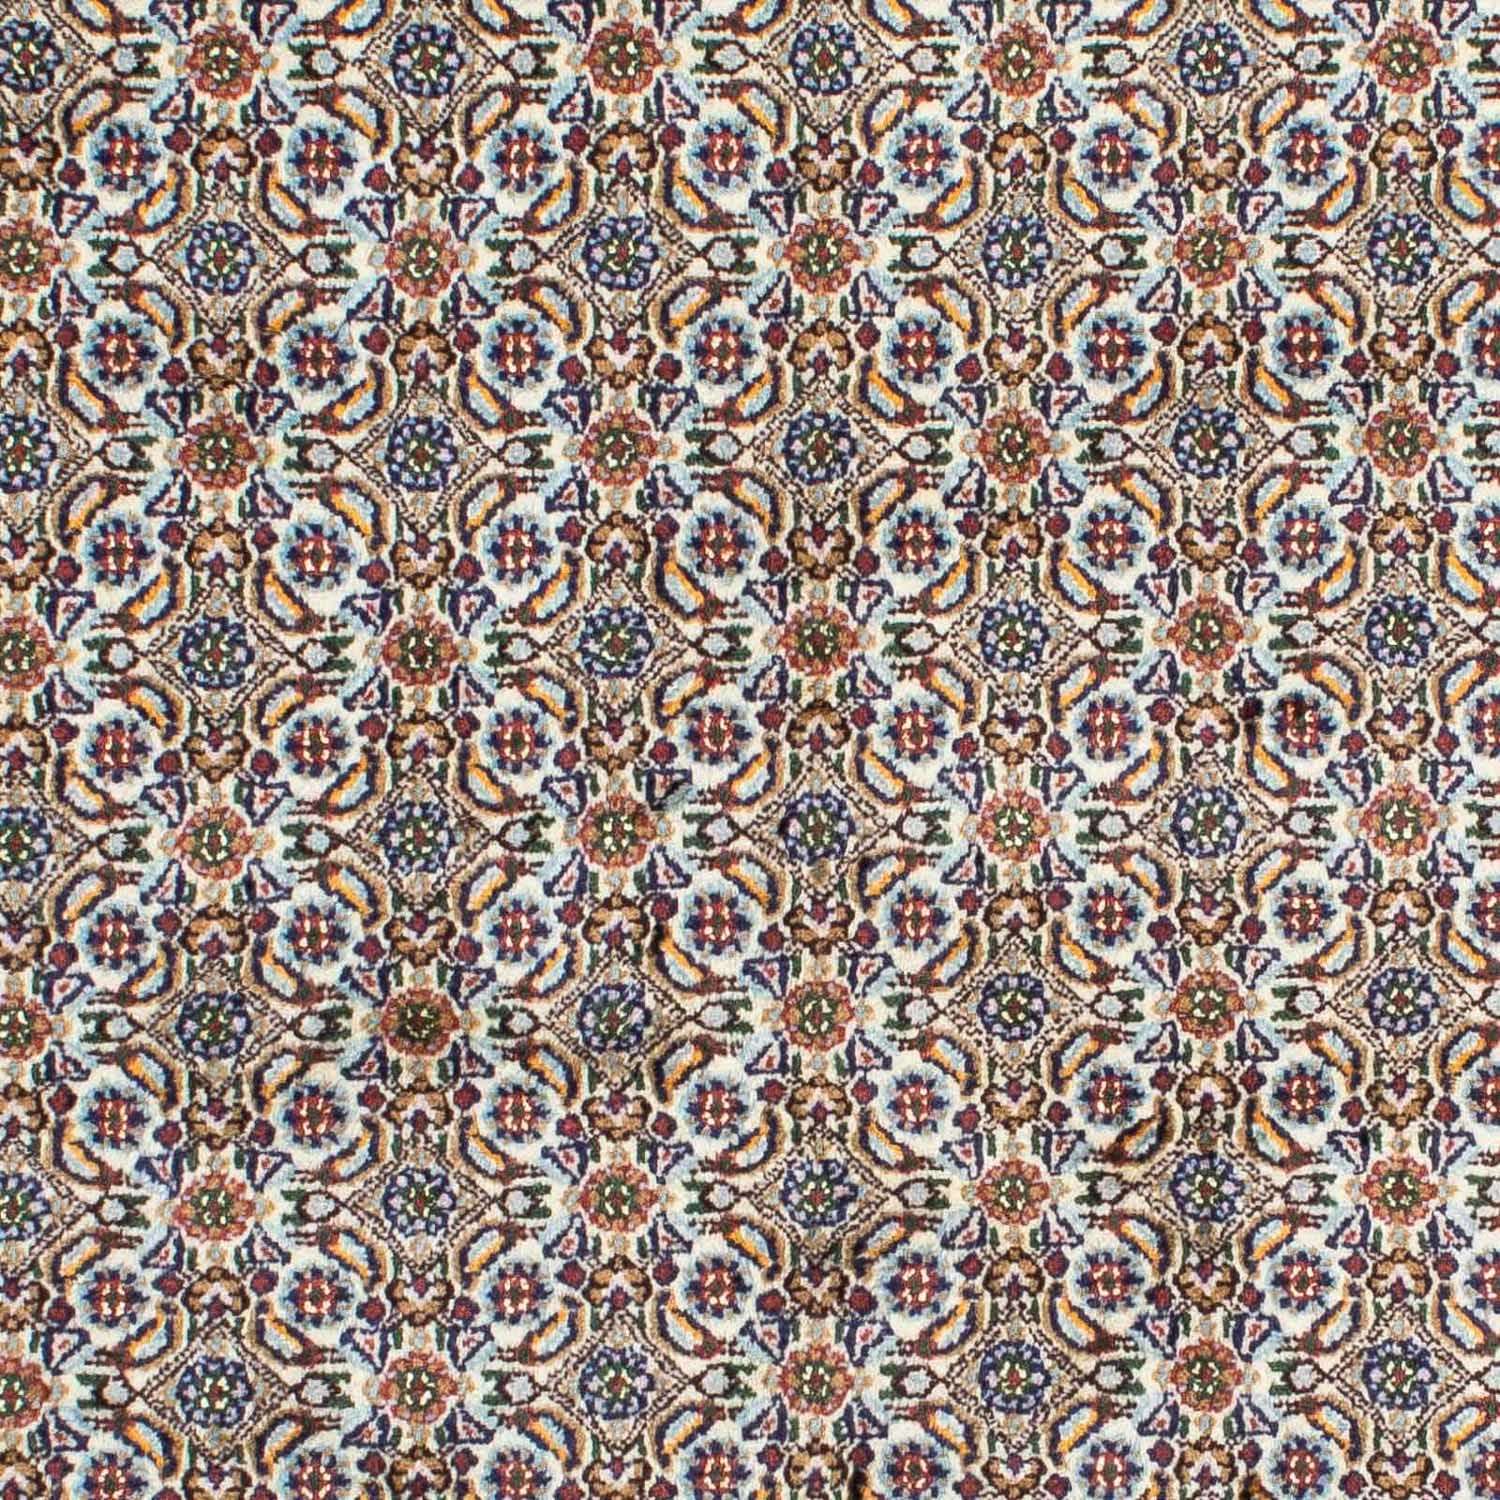 Tapis persan - Classique - 192 x 150 cm - beige